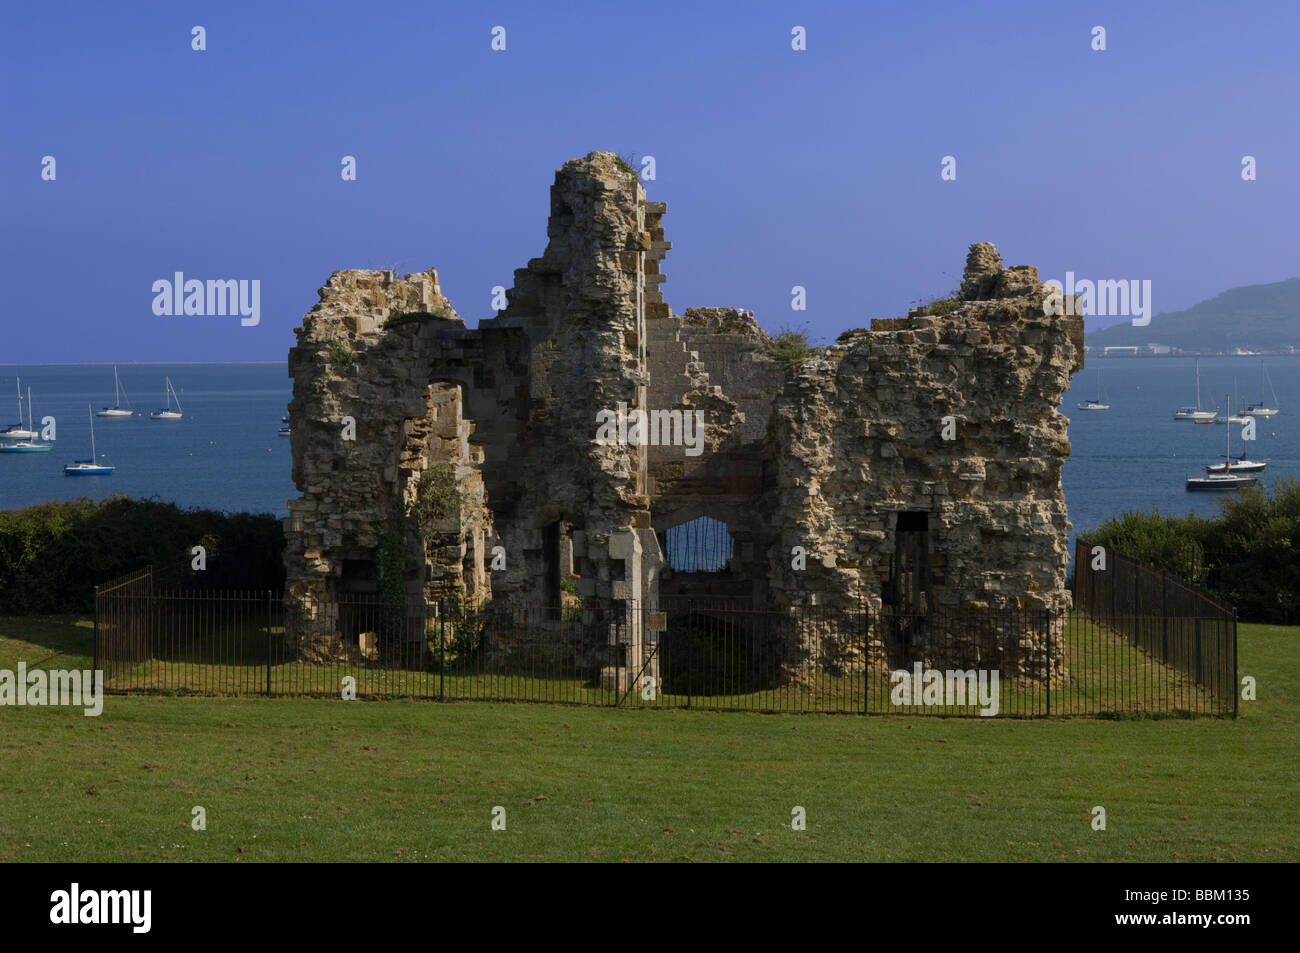 Les ruines de château de Sandsfoot surplombant le port de Portland, dans le Dorset, Angleterre. Banque D'Images